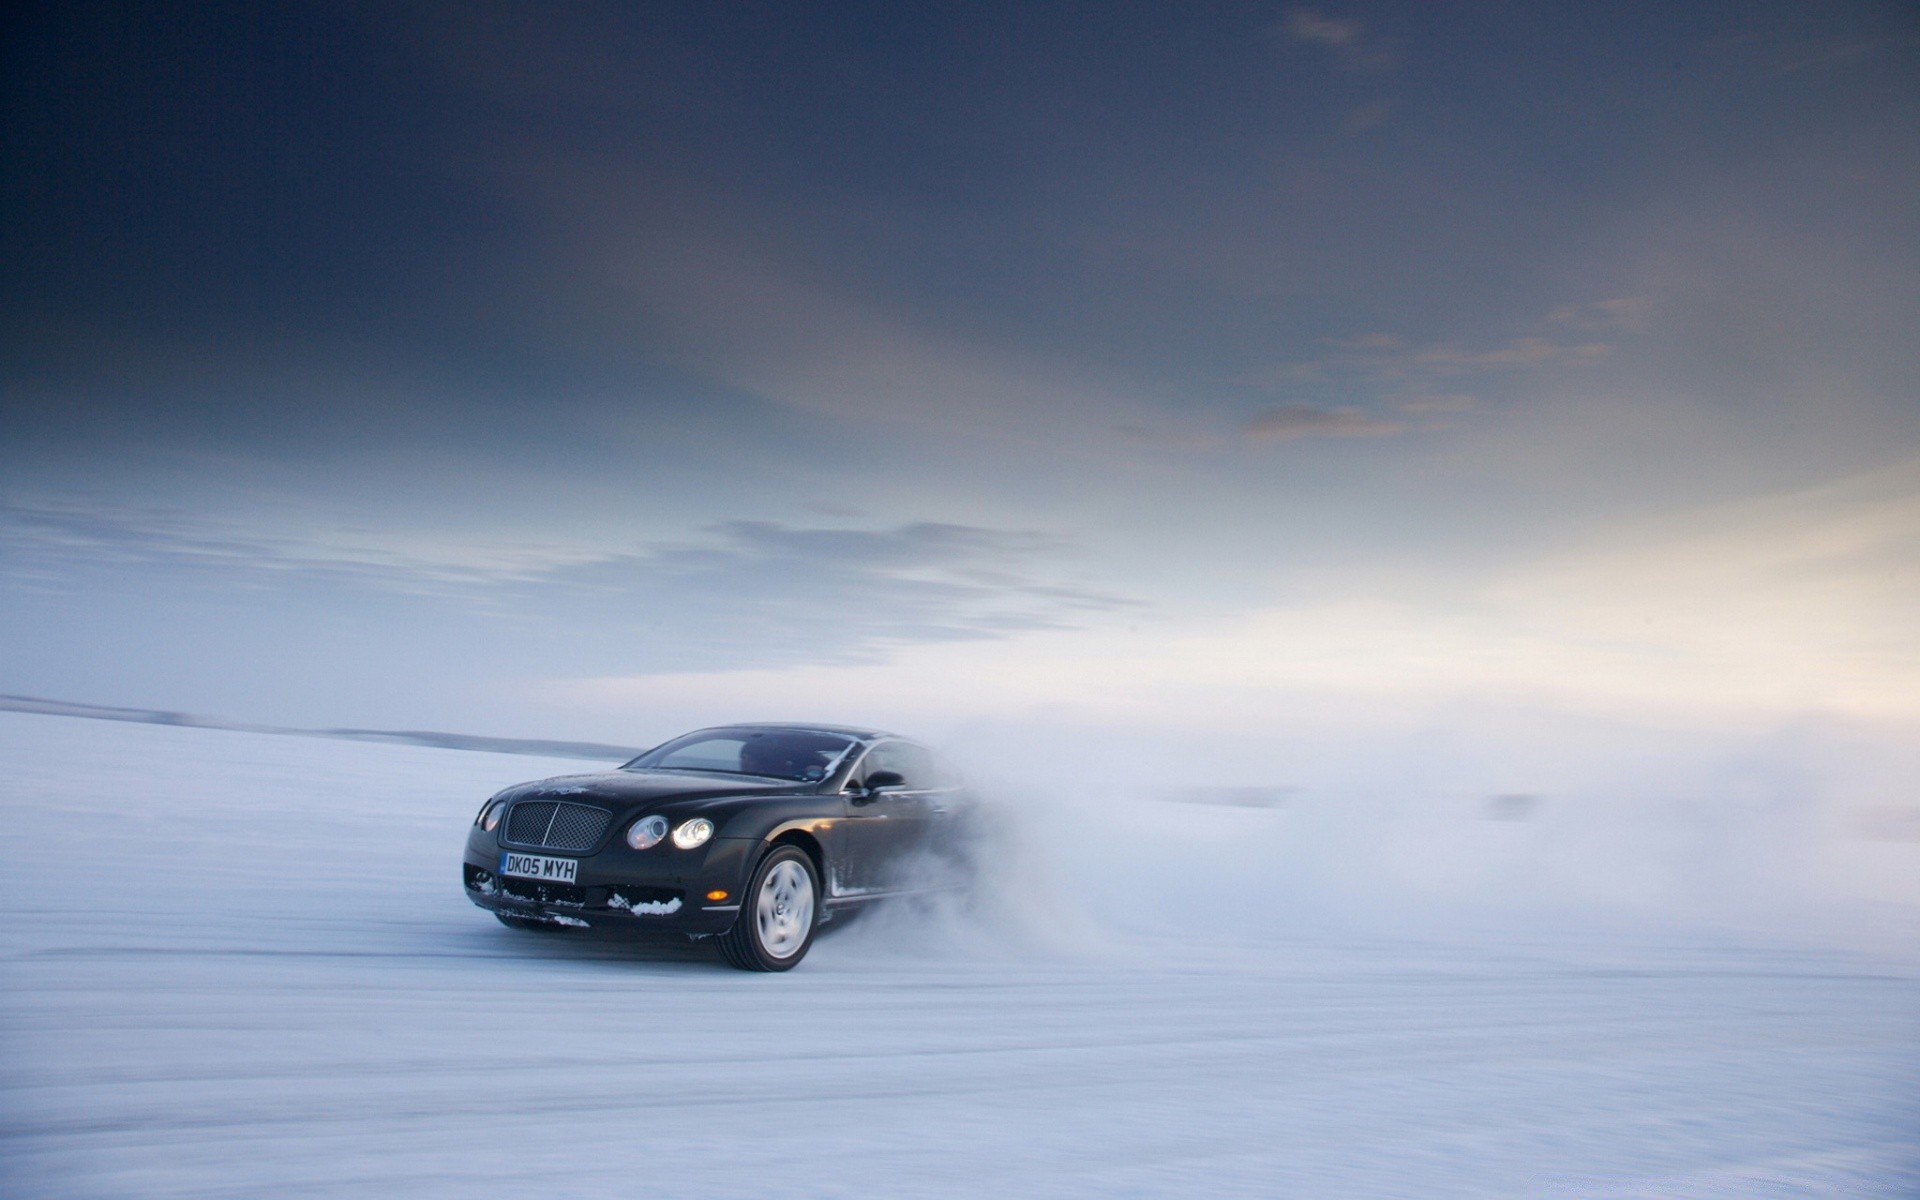 другая техника пейзаж автомобиль зима снег автомобиль шторм дорога погода свет спешите путешествия действие транспортная система